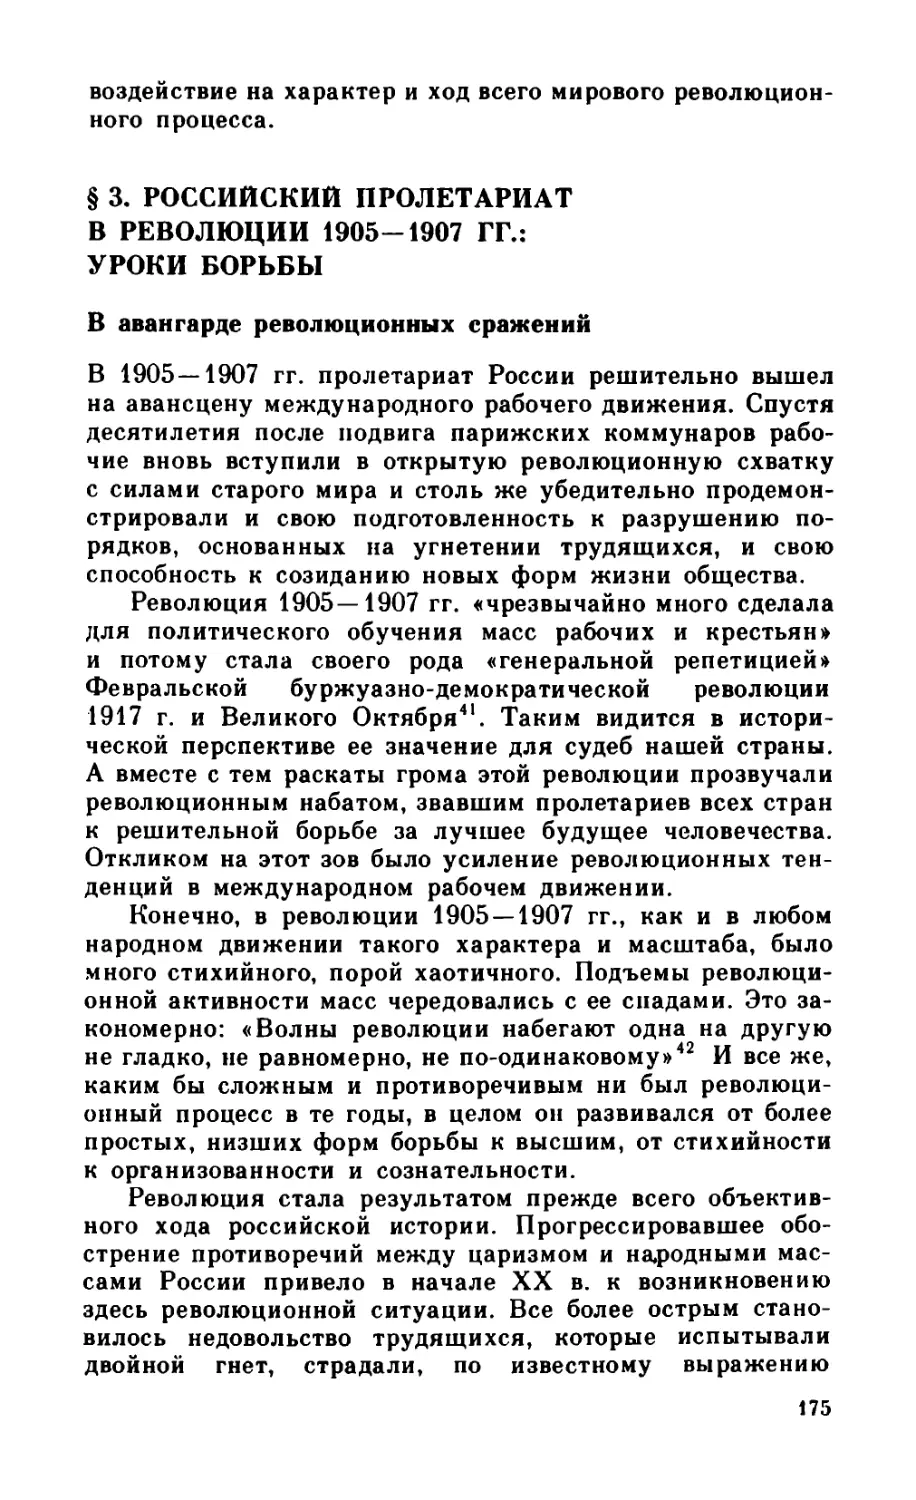 § 3. Российский пролетариат в революции 1905—1907 гг.: уроки борьбы